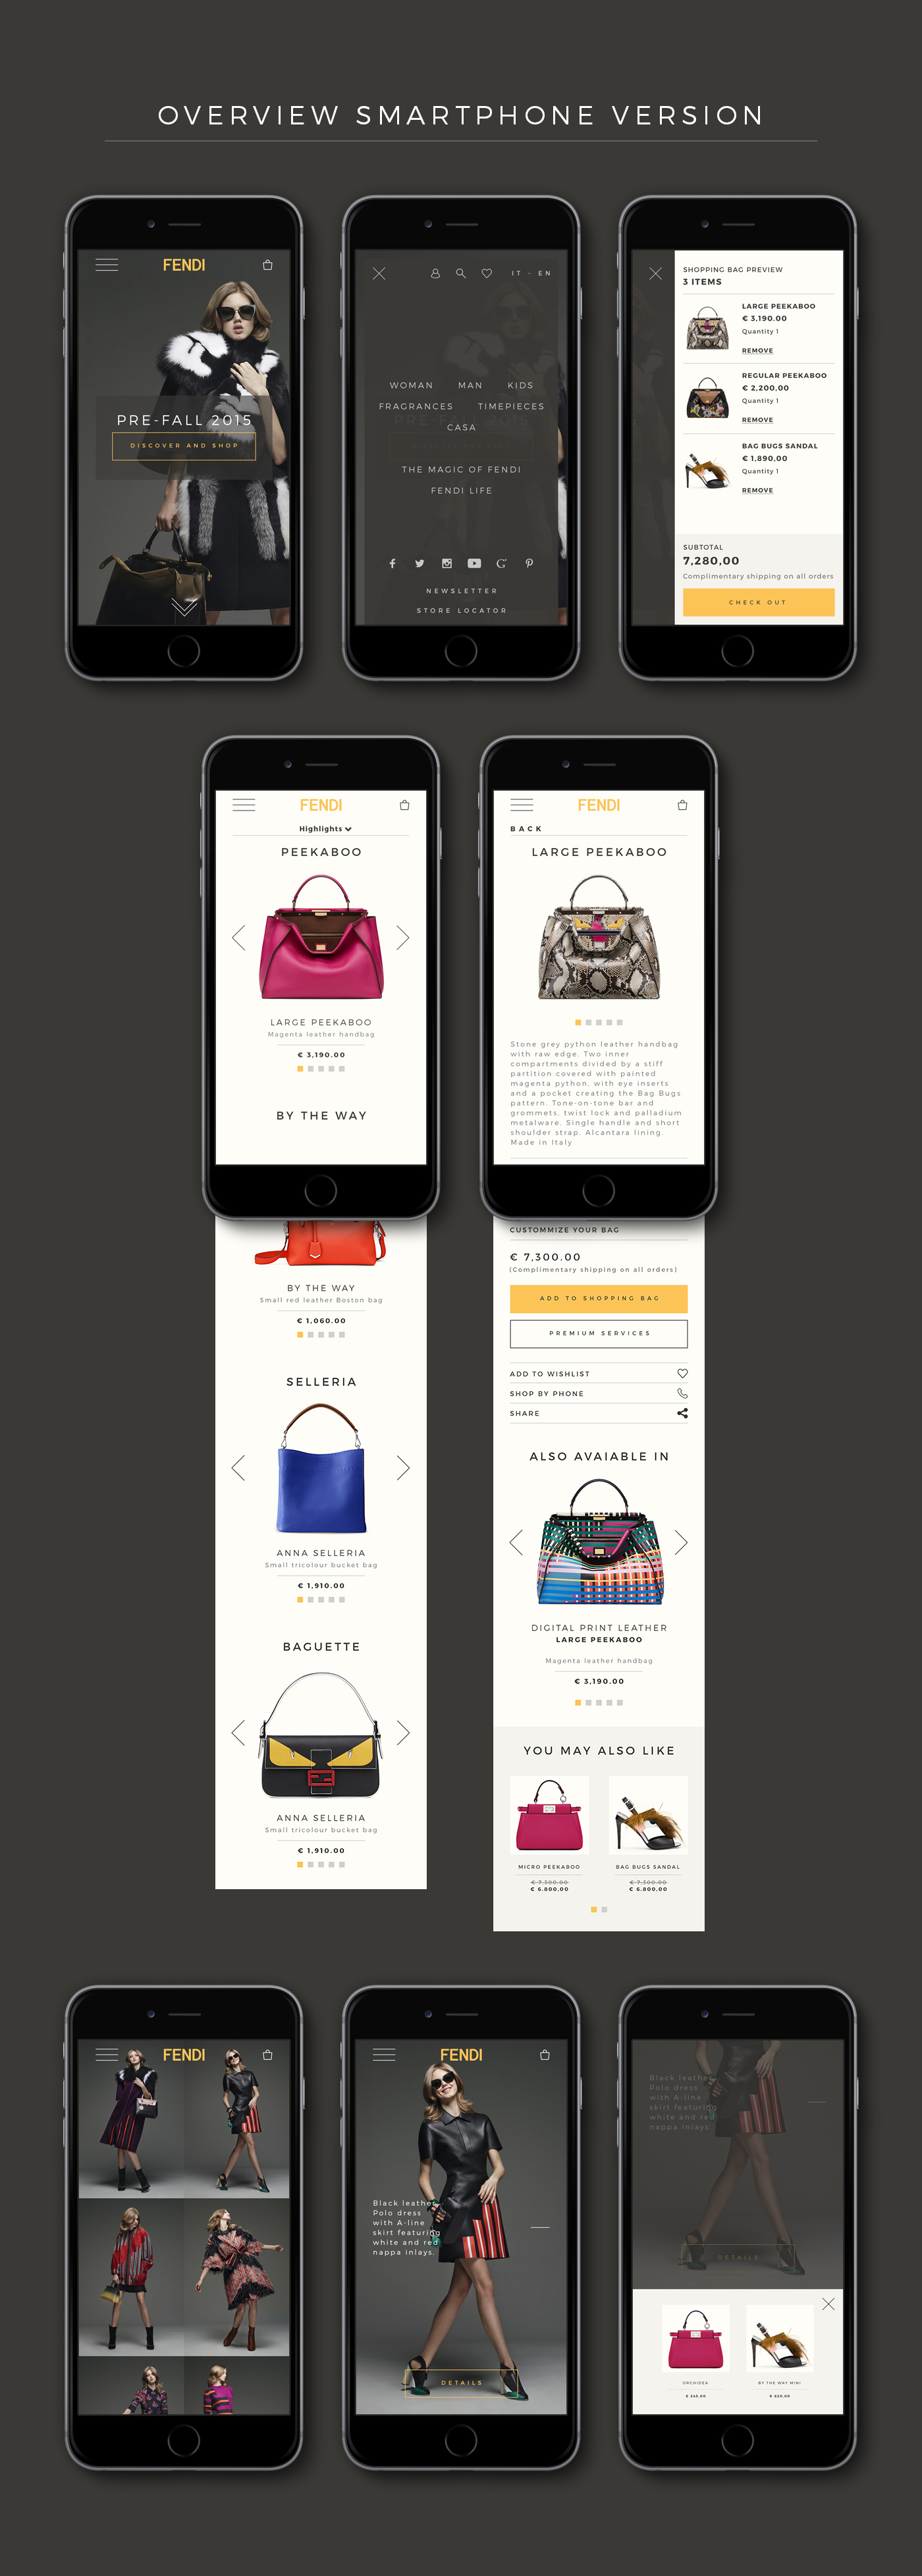 web site Luca Fasoli bitterfruit Responsive Design user experience tablet smartphone mobile full screen digital design fendi eCommerce design fashion branding